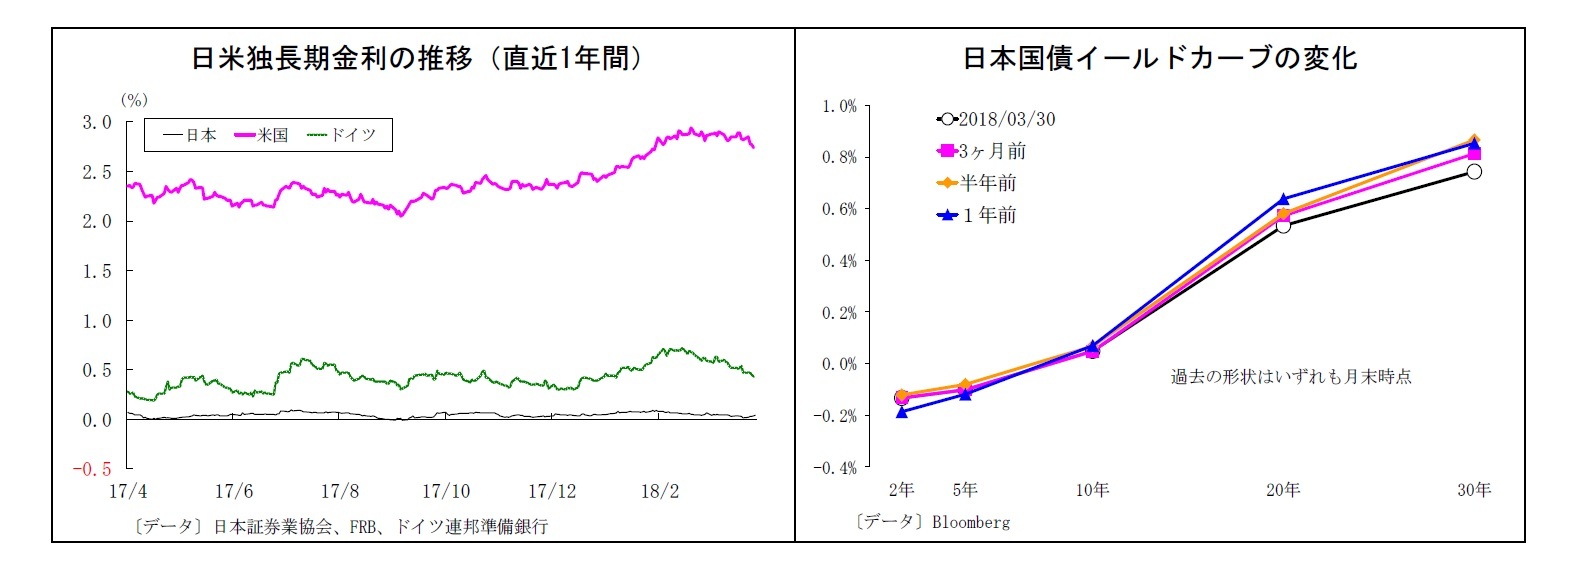 日米独長期金利の推移（直近1年間）/日本国債イールドカーブの変化